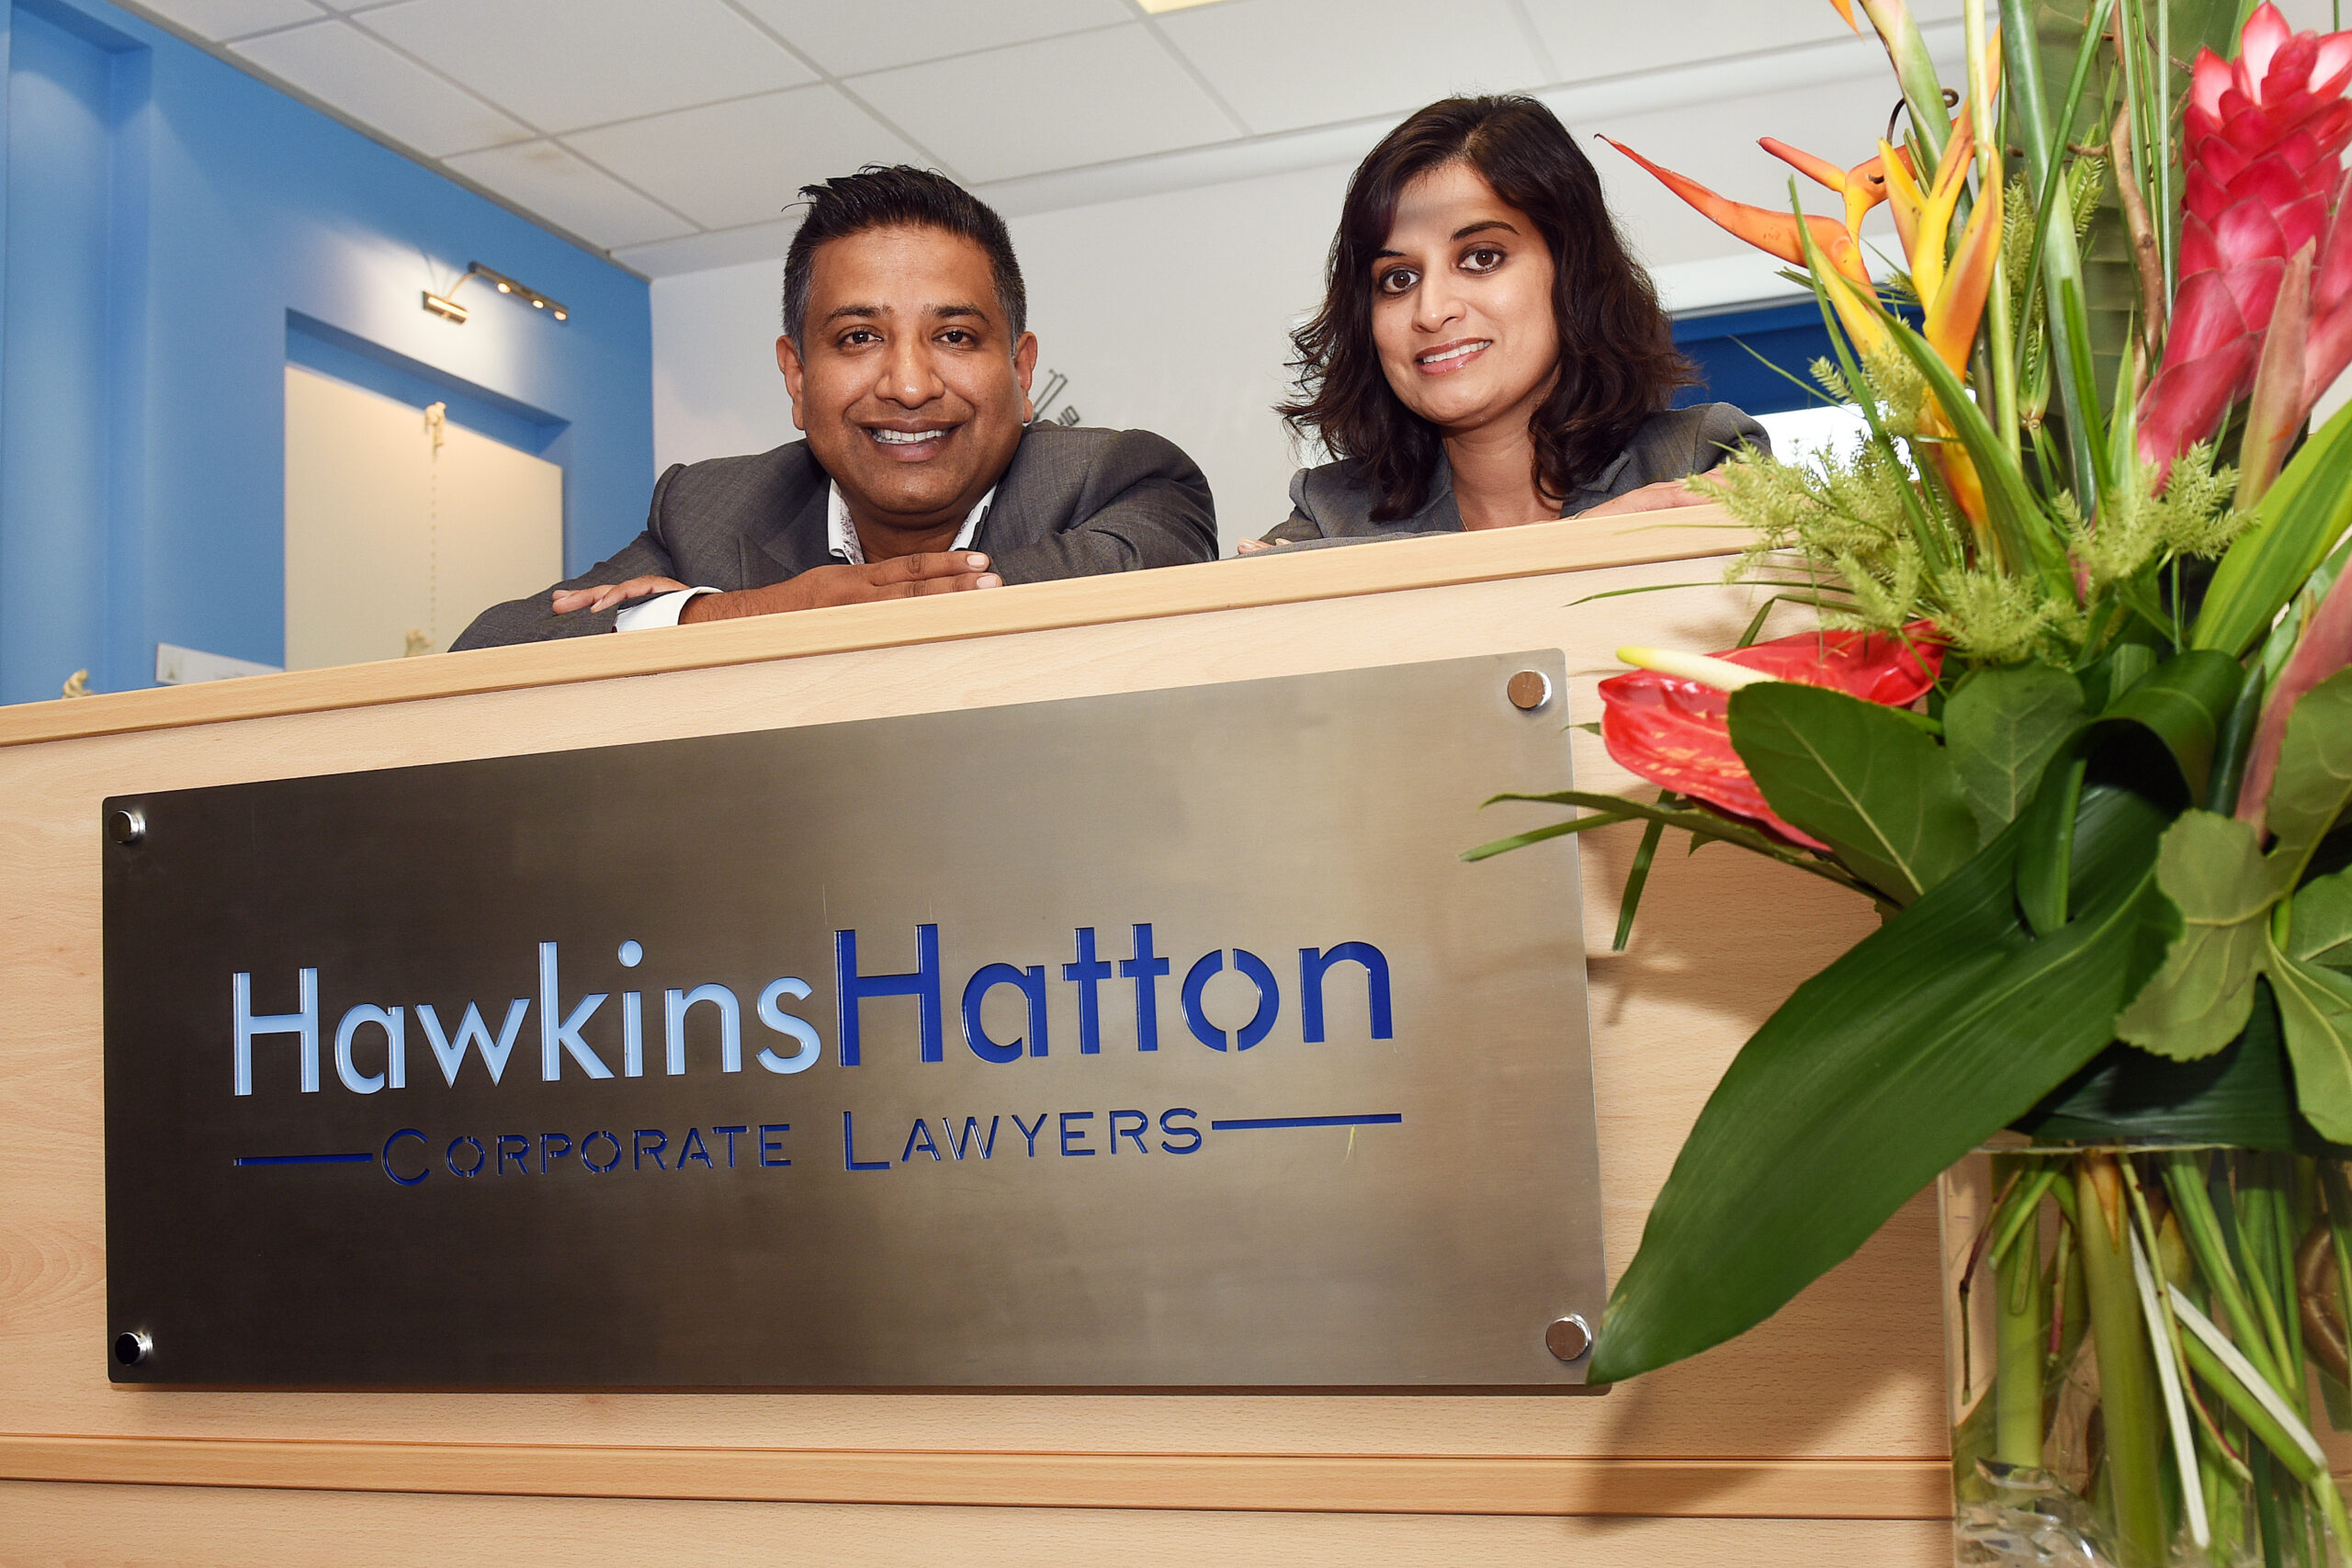 Hawkins-Hatton